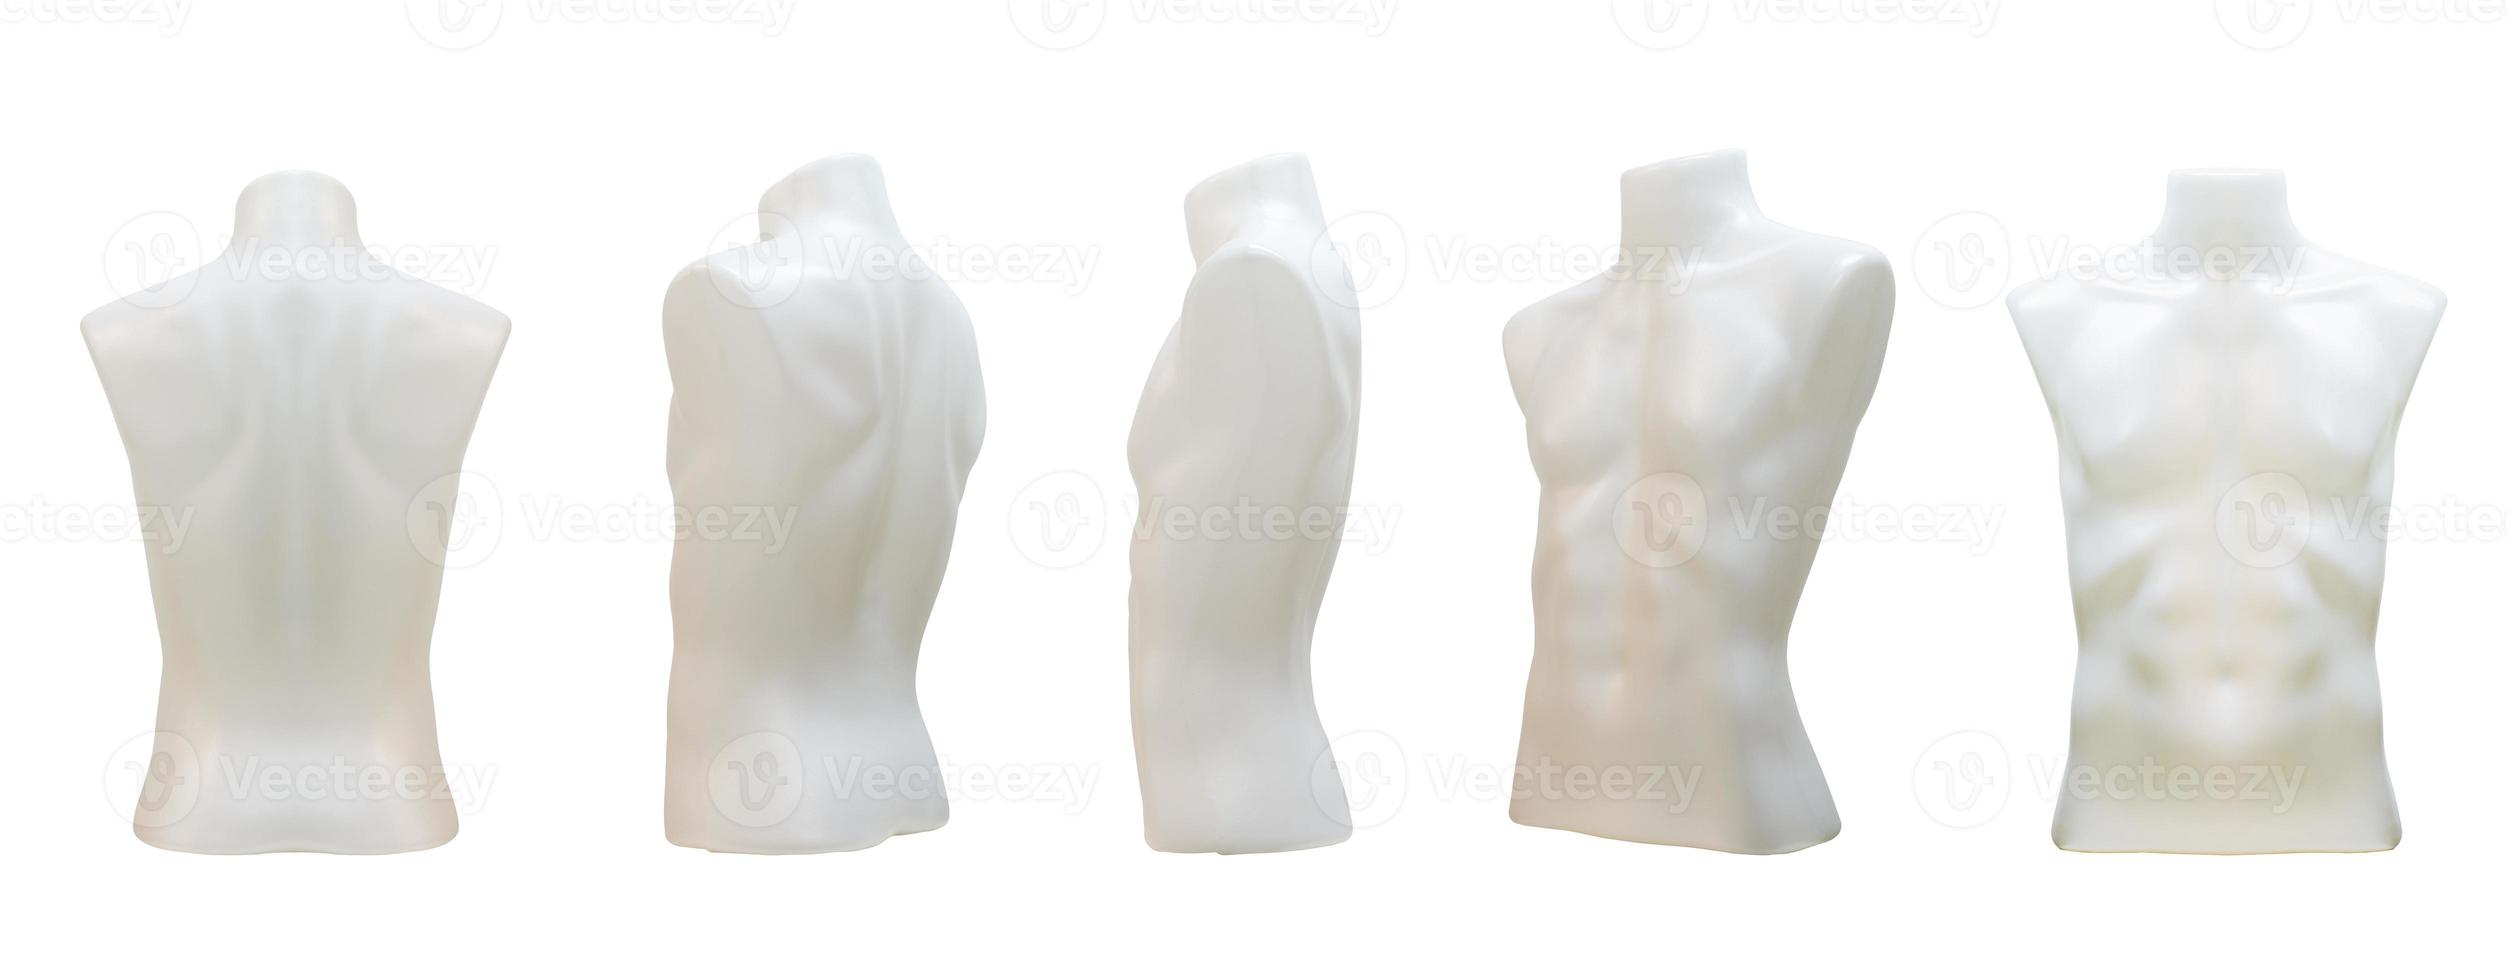 Oberkörper aus Kunststoff männliche Schaufensterpuppe unbekleidet isoliert auf weißem Hintergrund mit Beschneidungspfad foto